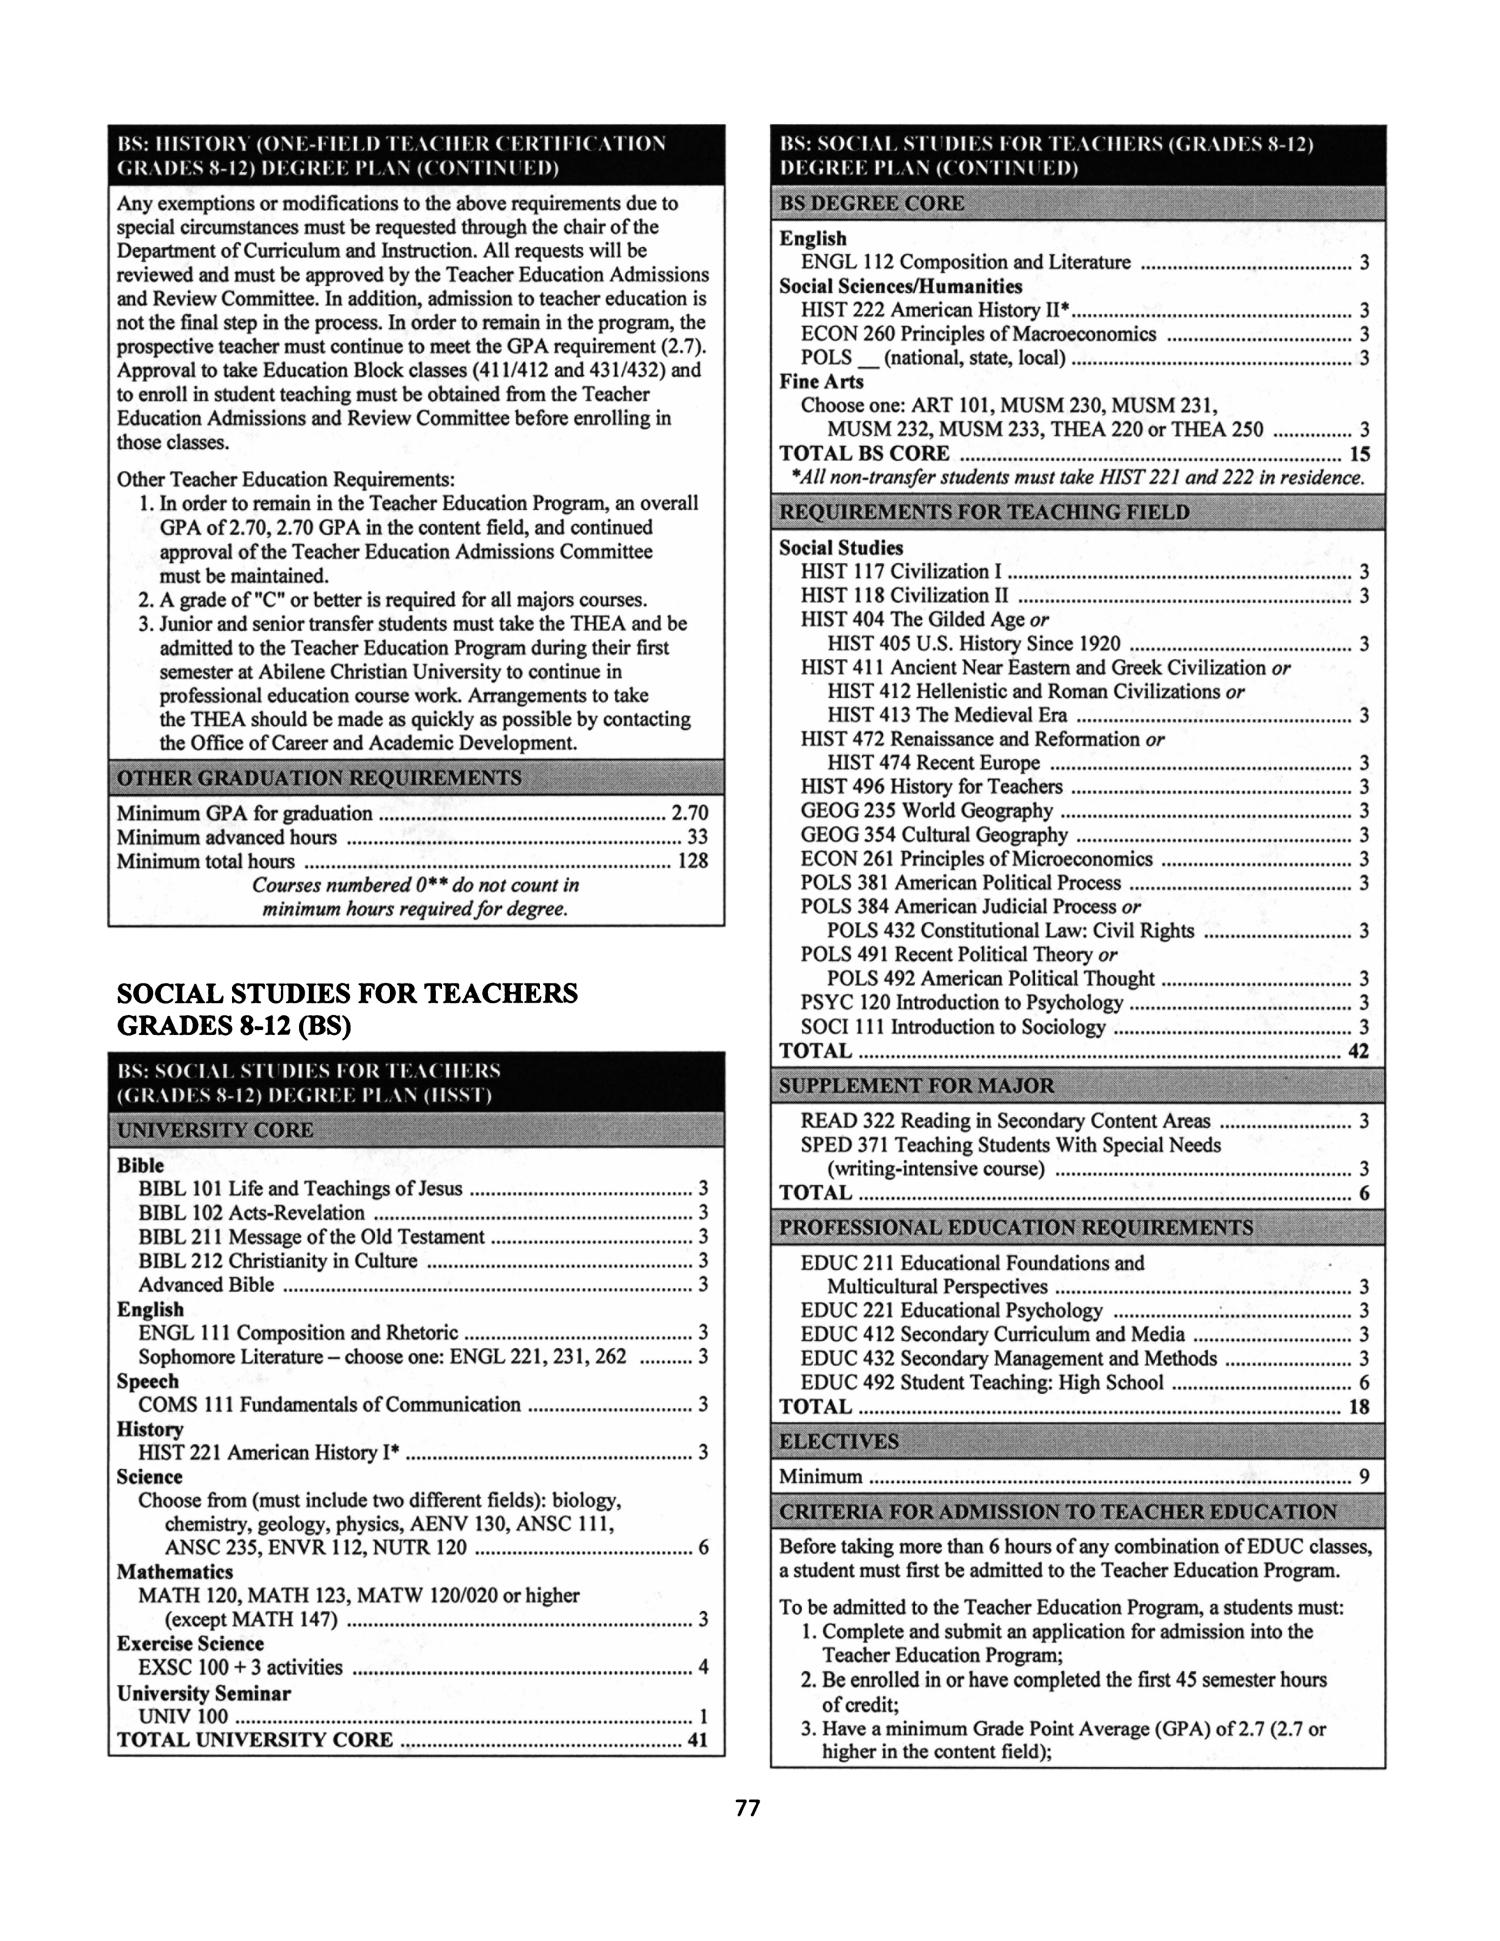 Catalog of Abilene Christian University, 2008-2009
                                                
                                                    77
                                                